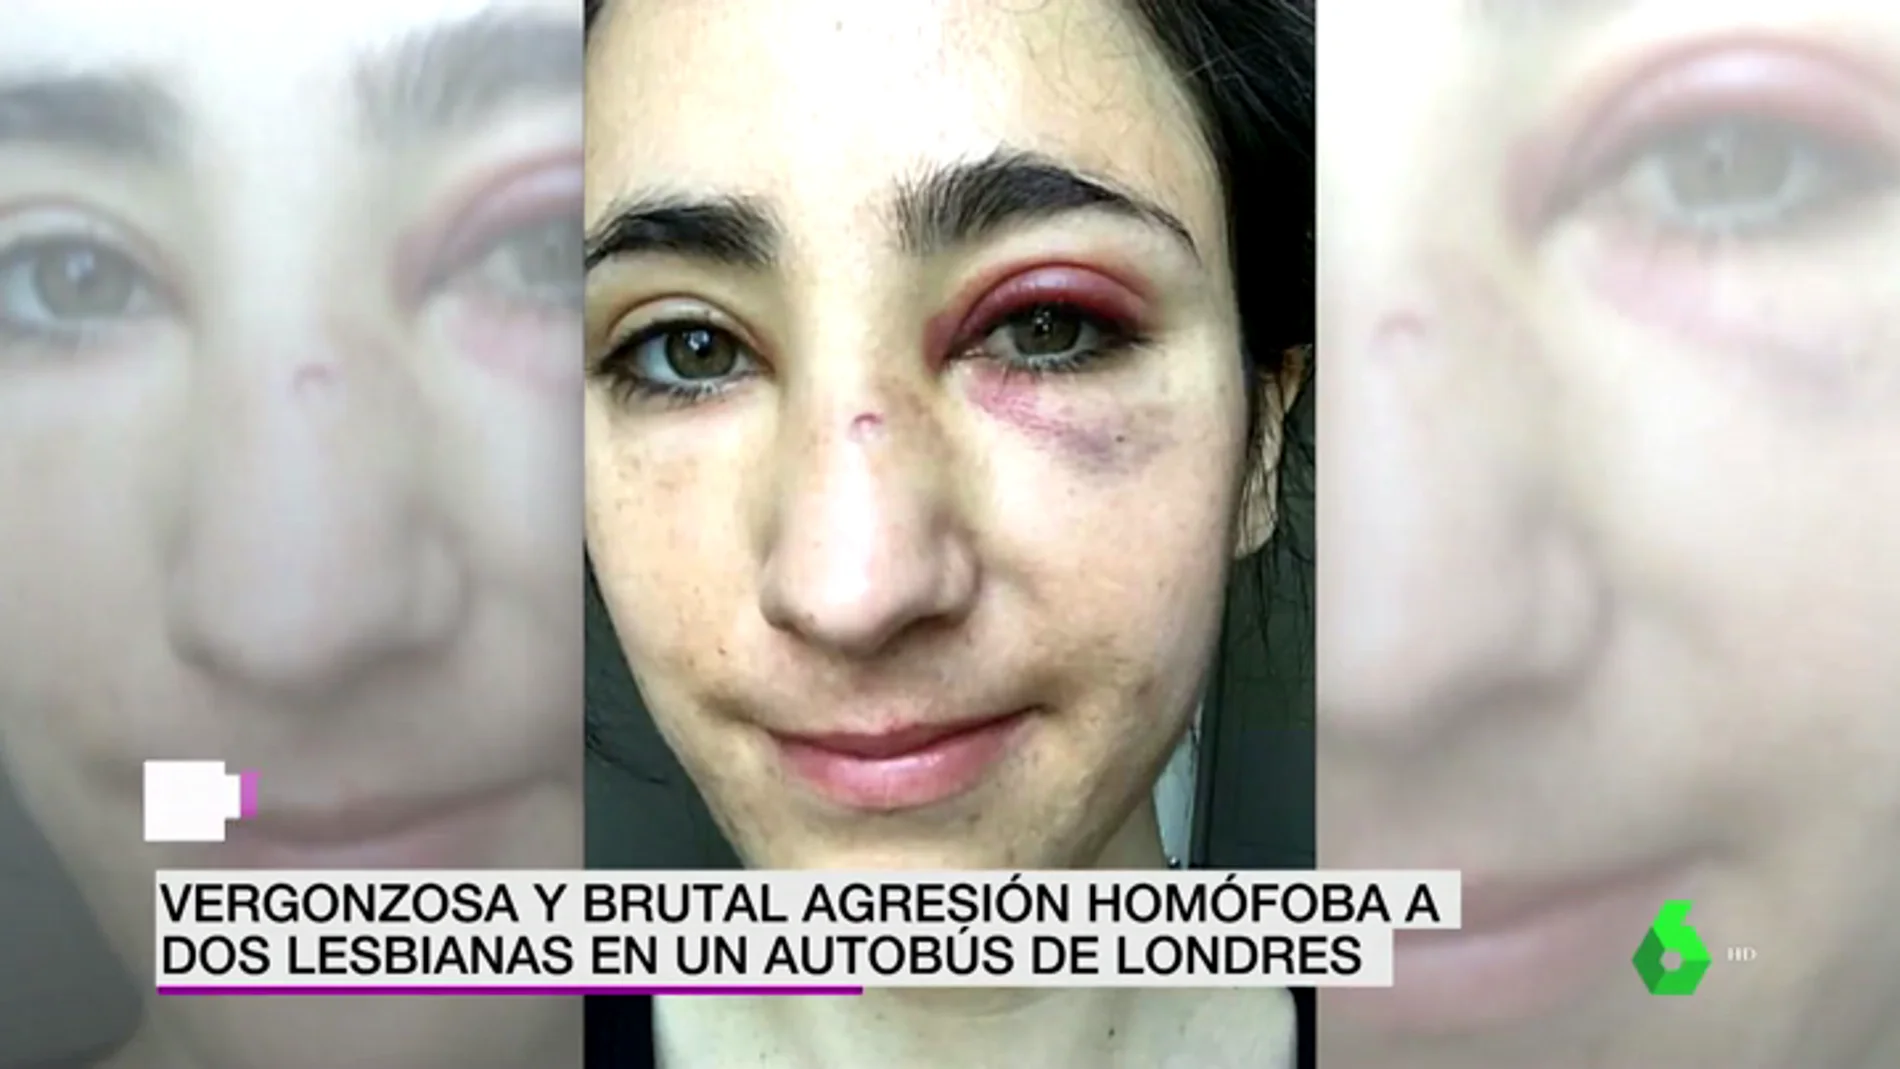 Un grupo de jóvenes propina una brutal paliza a dos lesbianas en Londres: "Solo veía mi sangre"